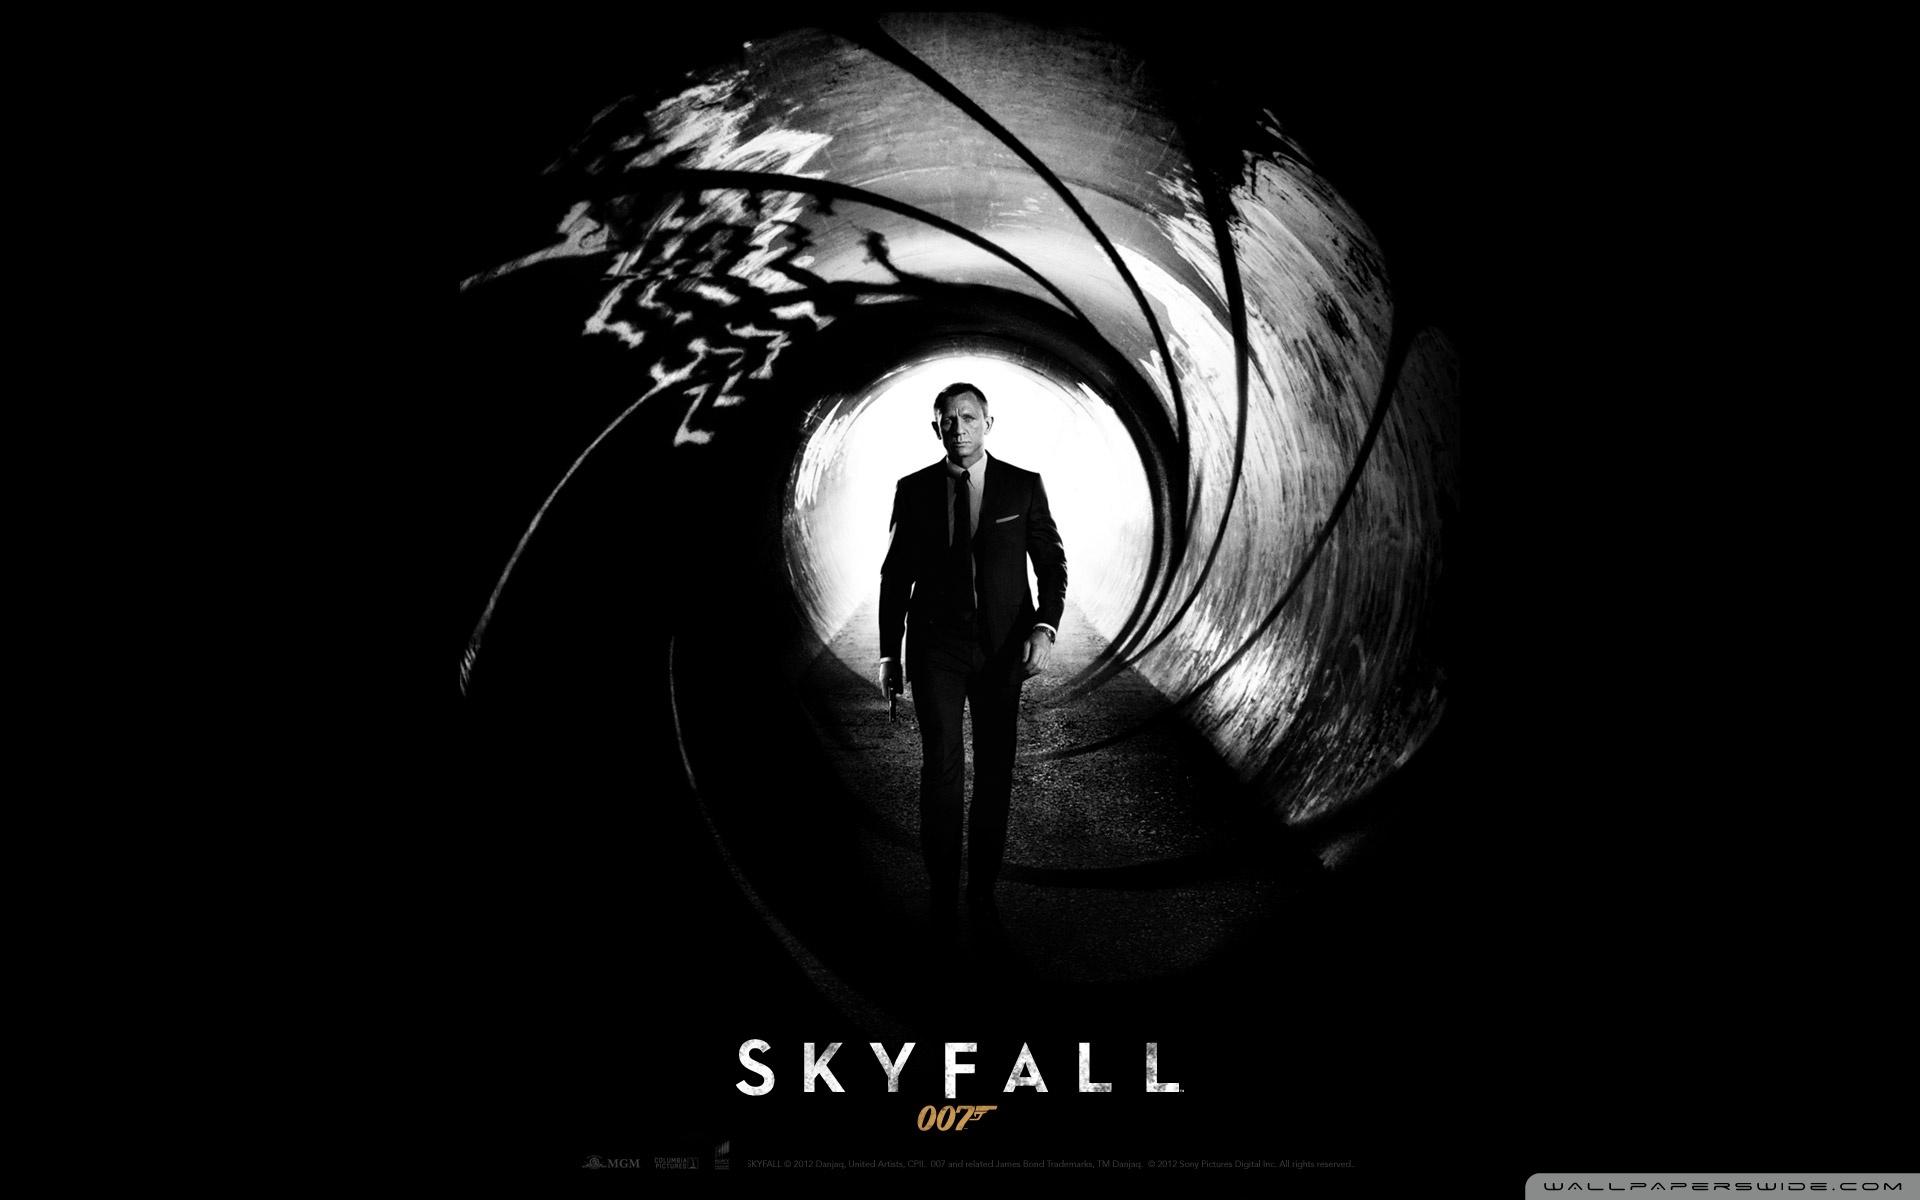 Skyfall 007 (2012) ❤ 4K HD Desktop Wallpaper for 4K Ultra HD TV